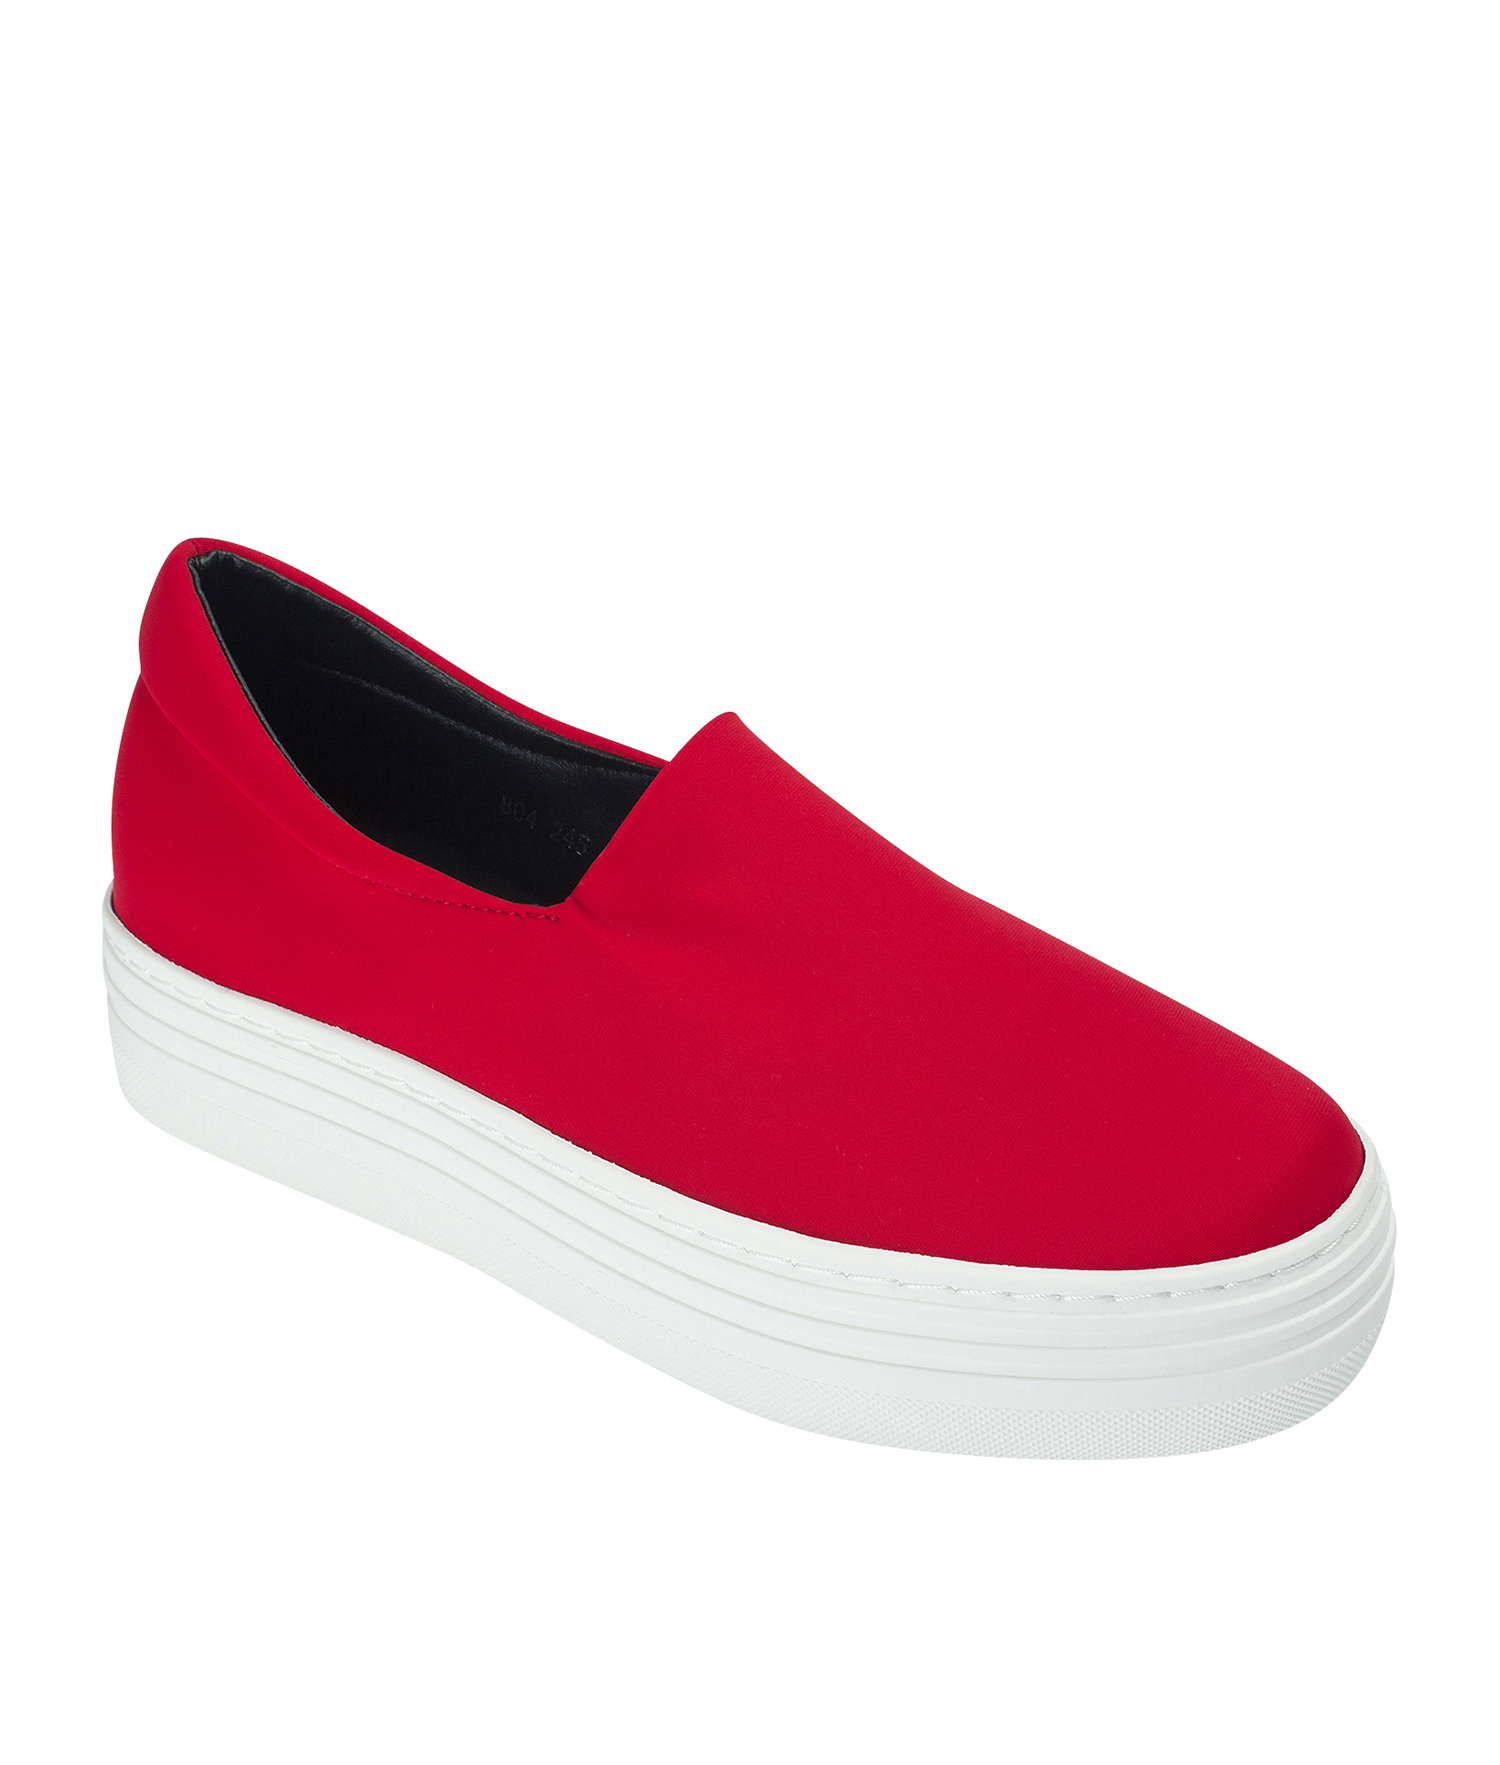 slip on red sneakers